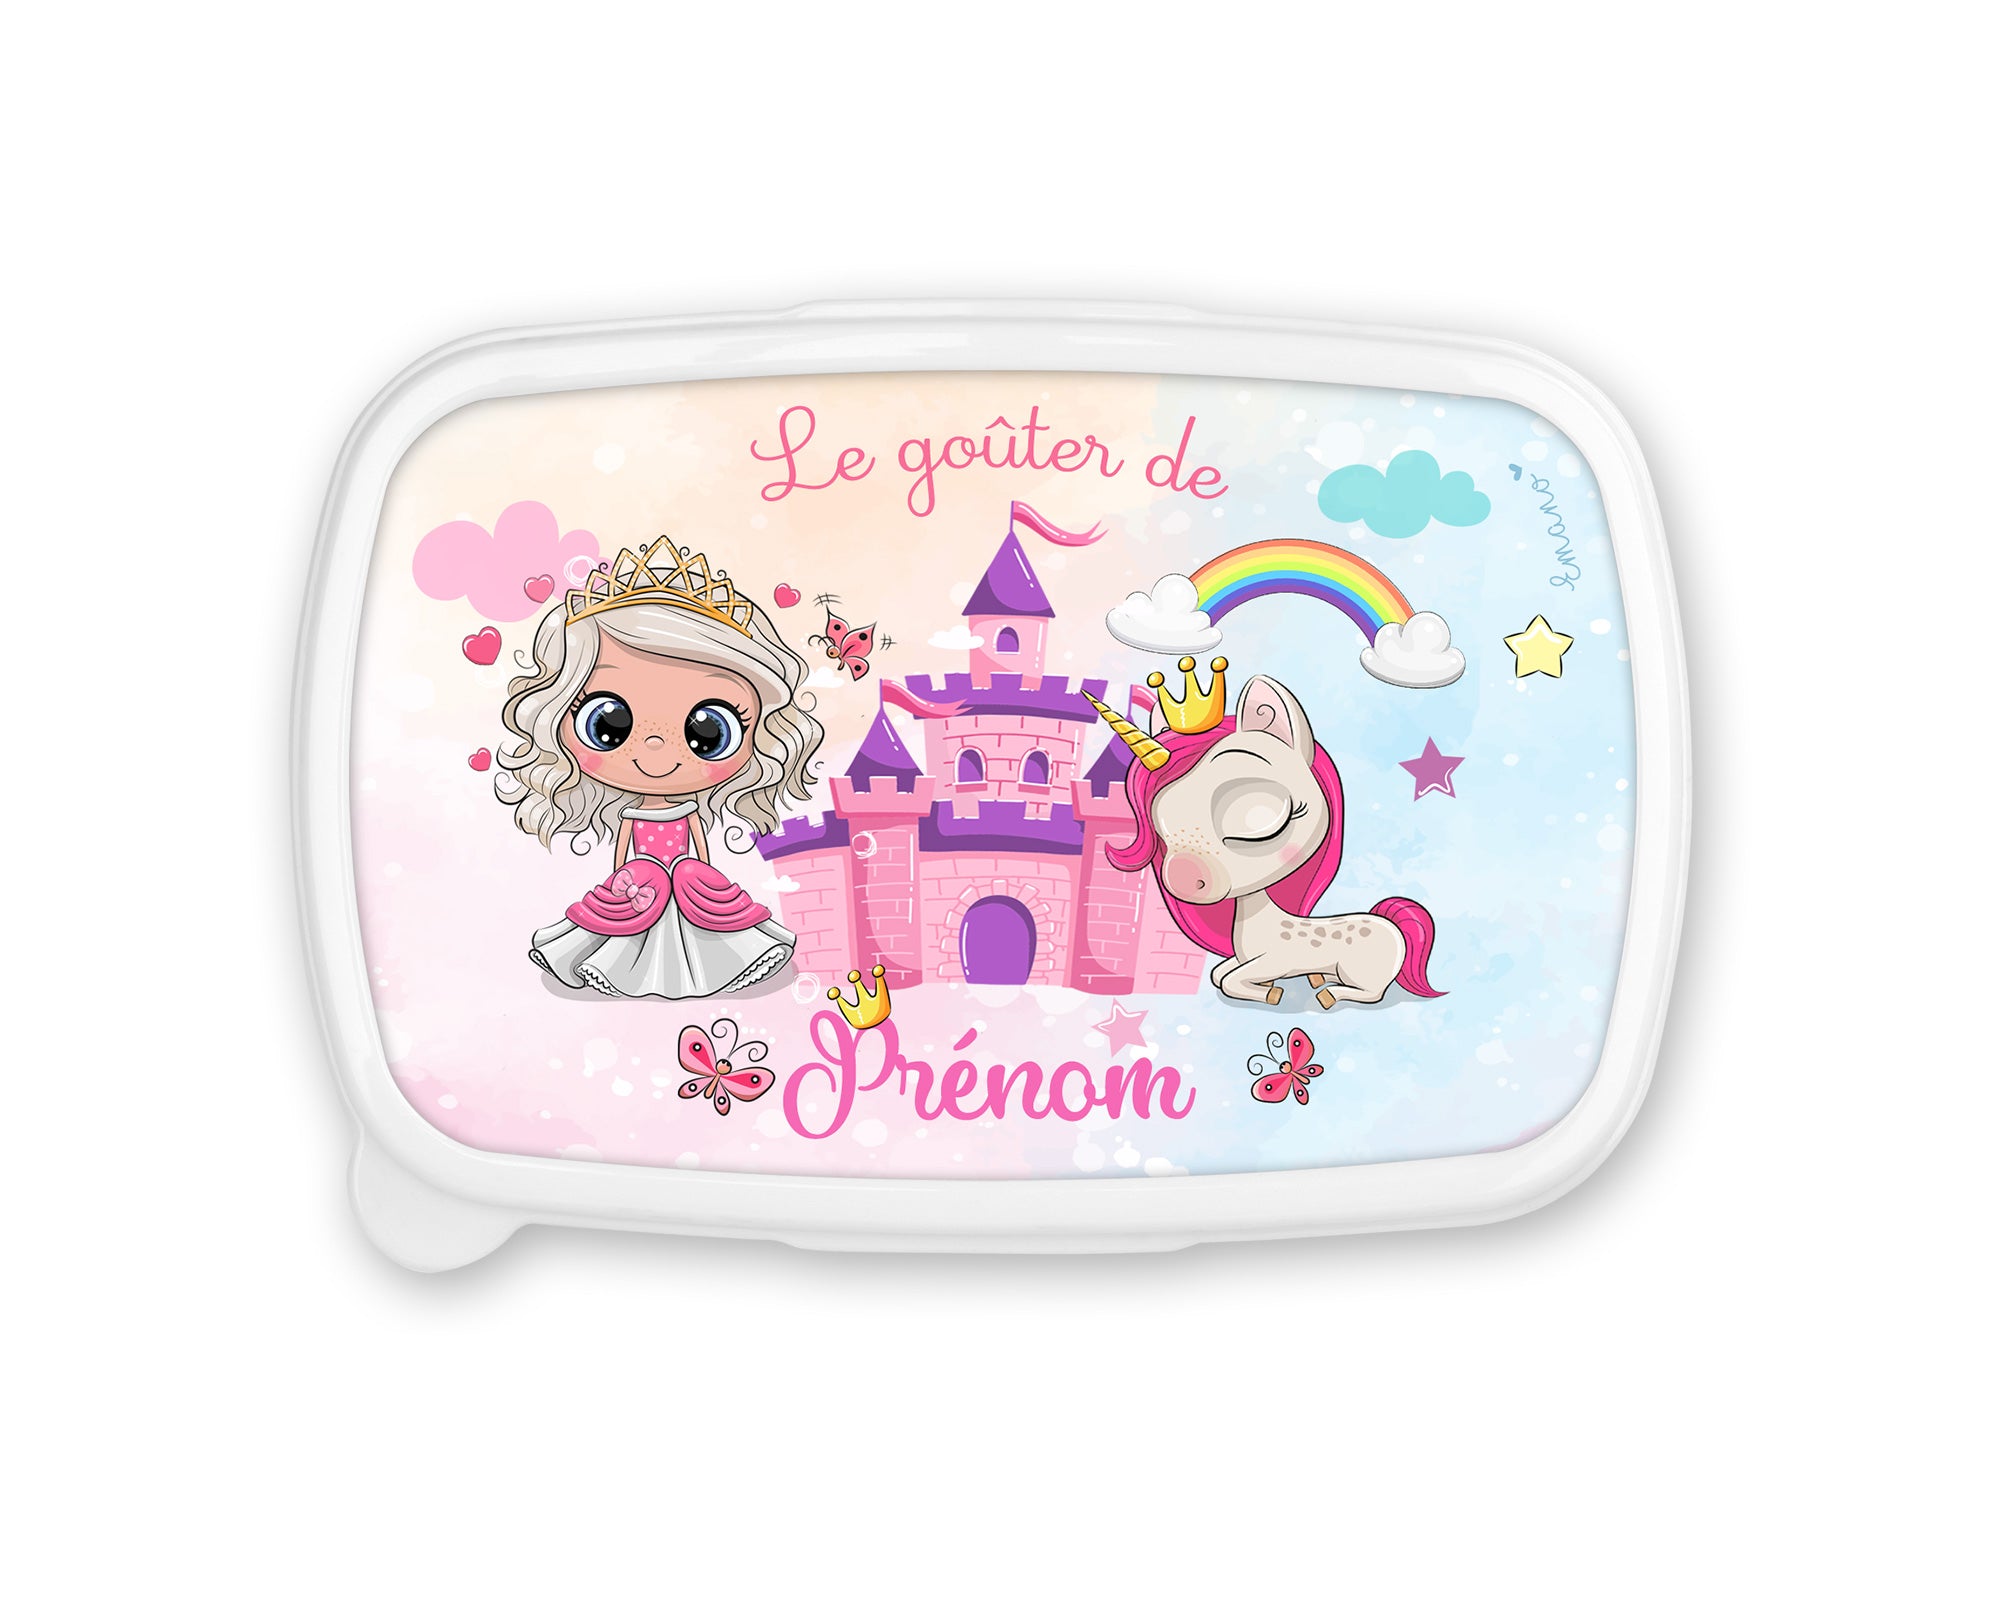 Boîte à Goûter Licorne Personnalisée : Magie dans Chaque Bouchée. Fini les gâteaux écrasés avec notre princesse licorne !